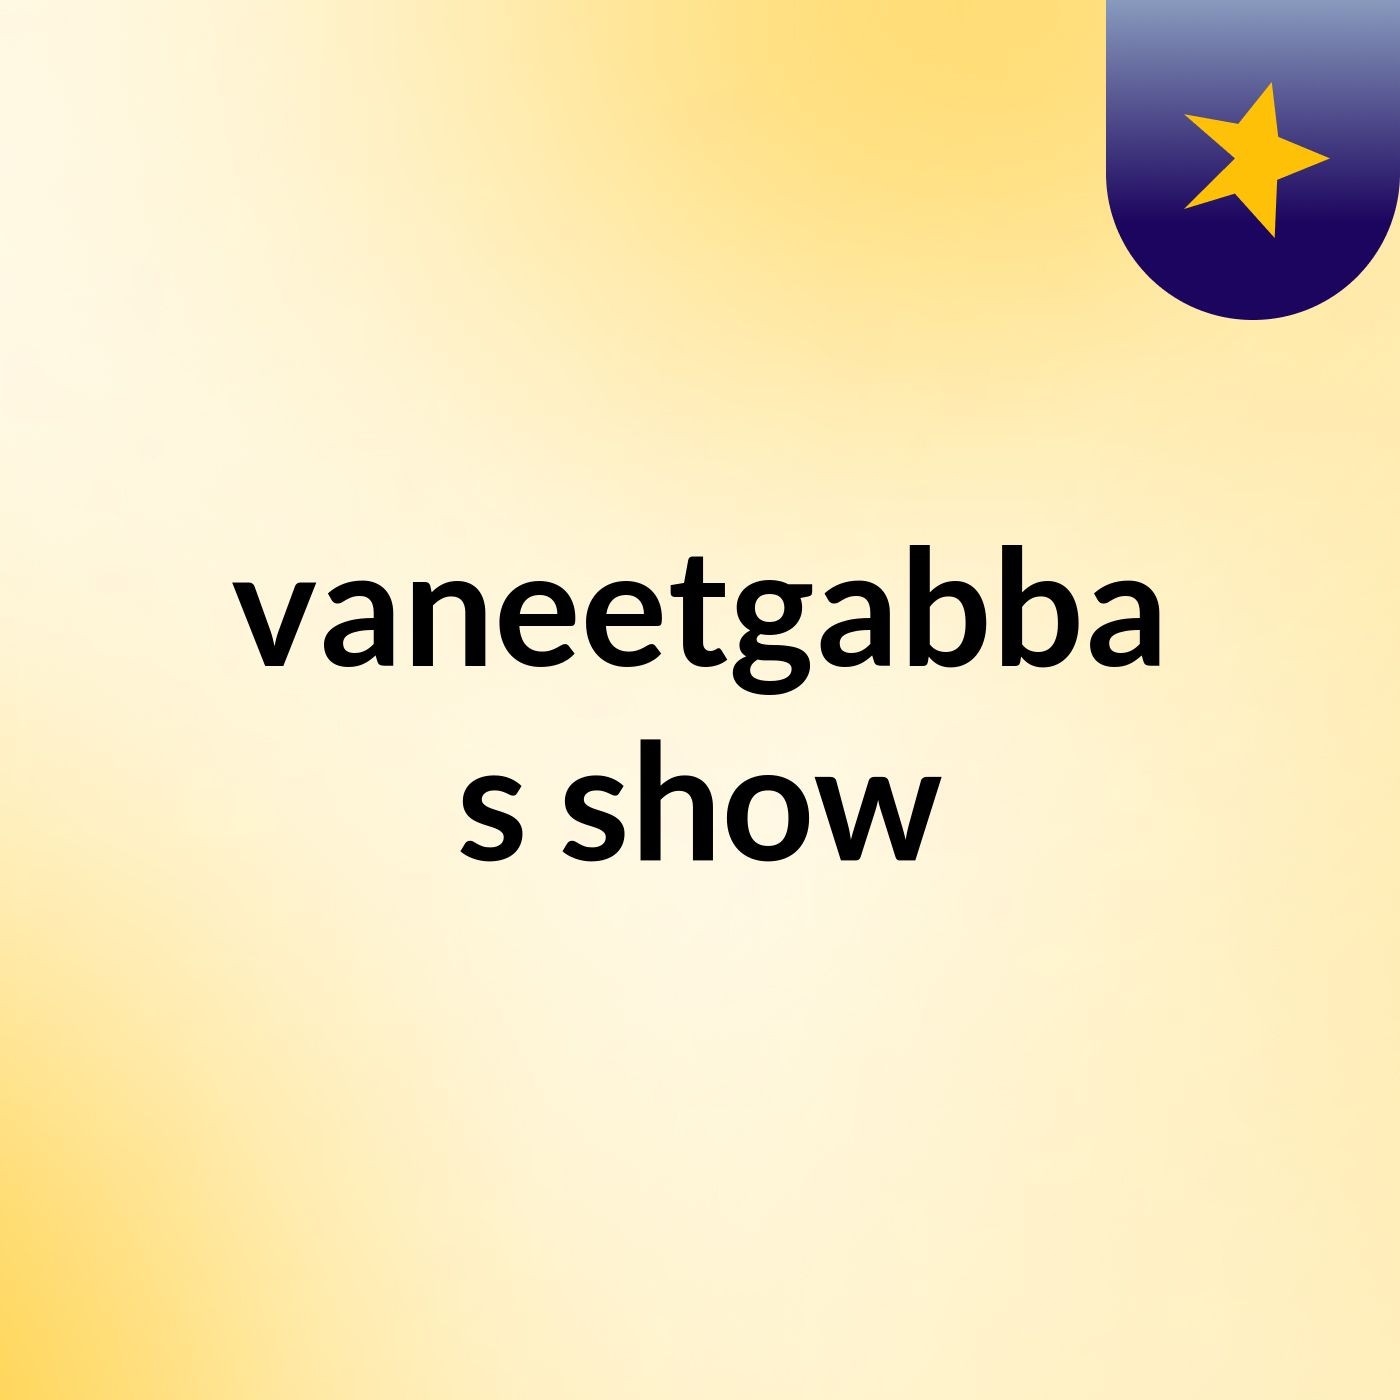 vaneetgabba's show